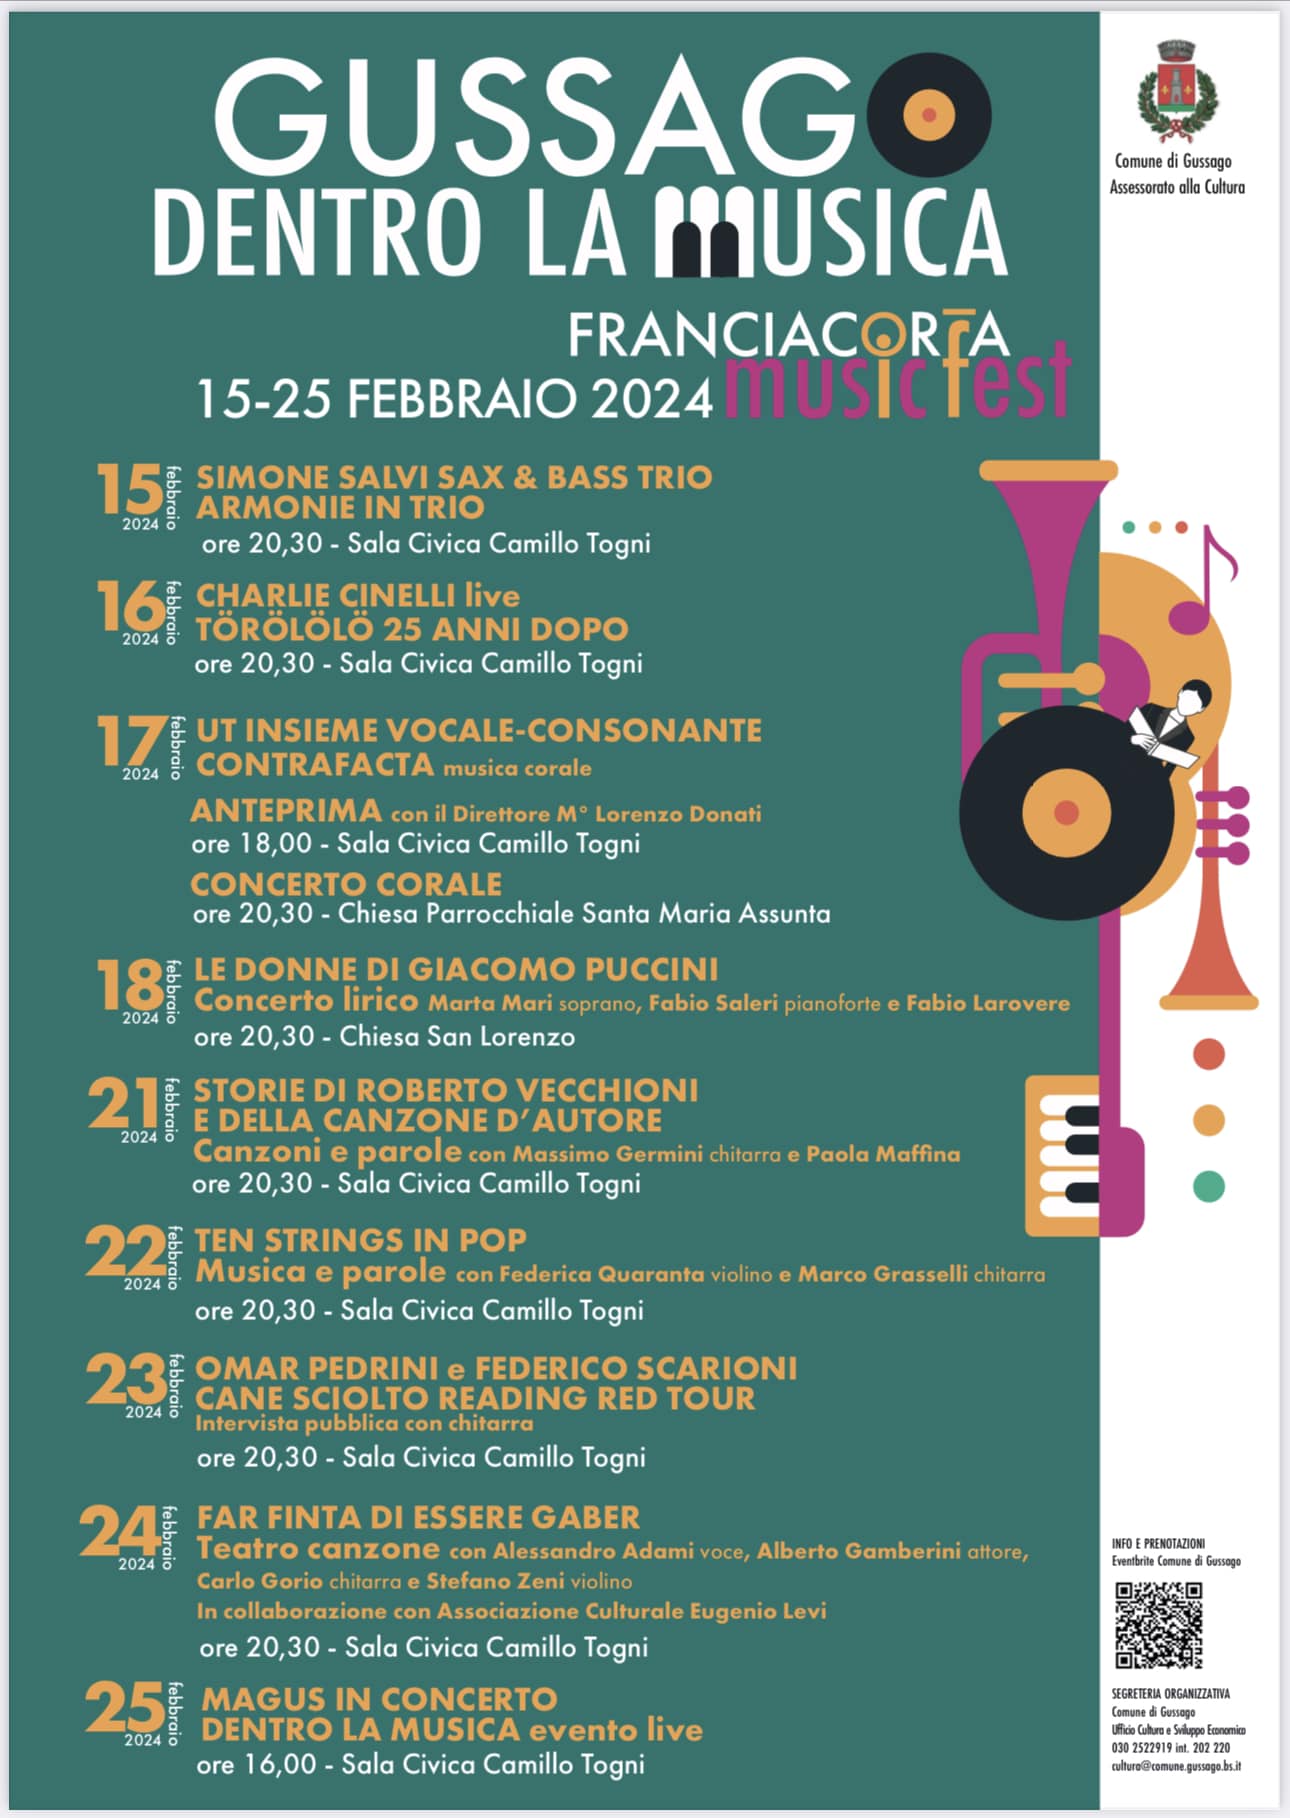 Franciacorta Music Fest – Gussago dentro la musica